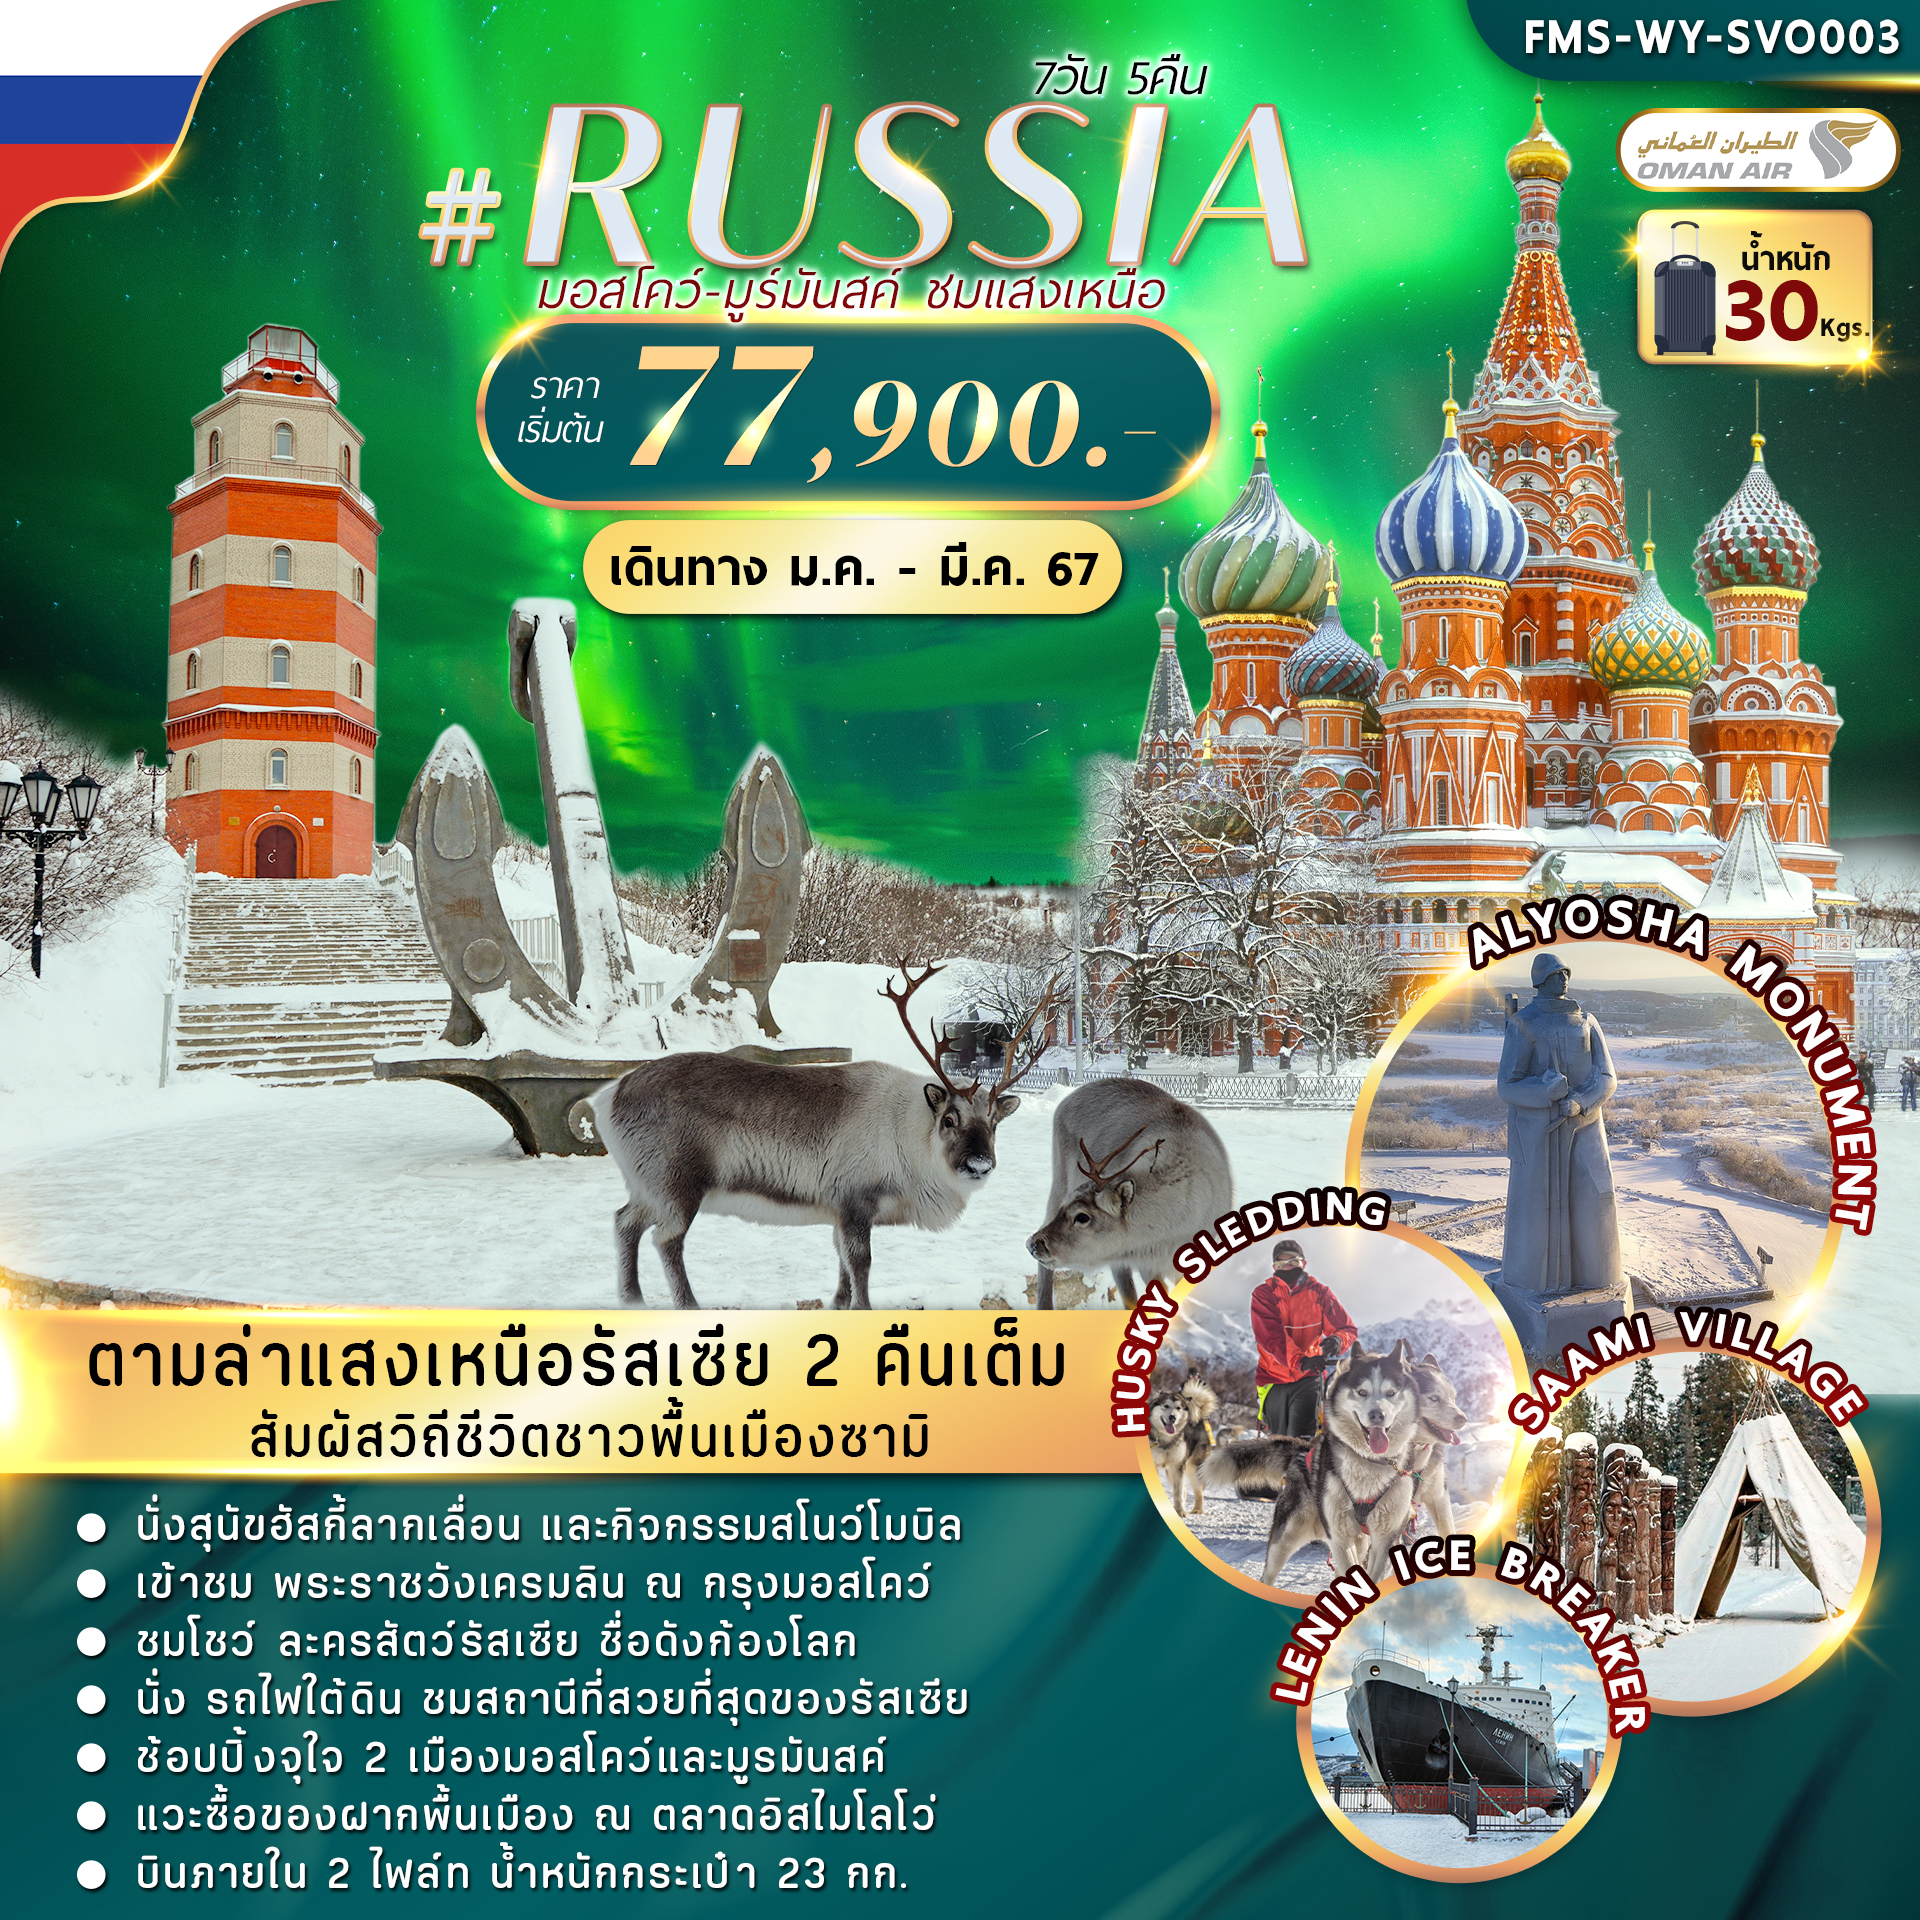 ทัวร์รัสเซีย RUSSIA MOW-MURMANSK AURORA 7D5N (WY)